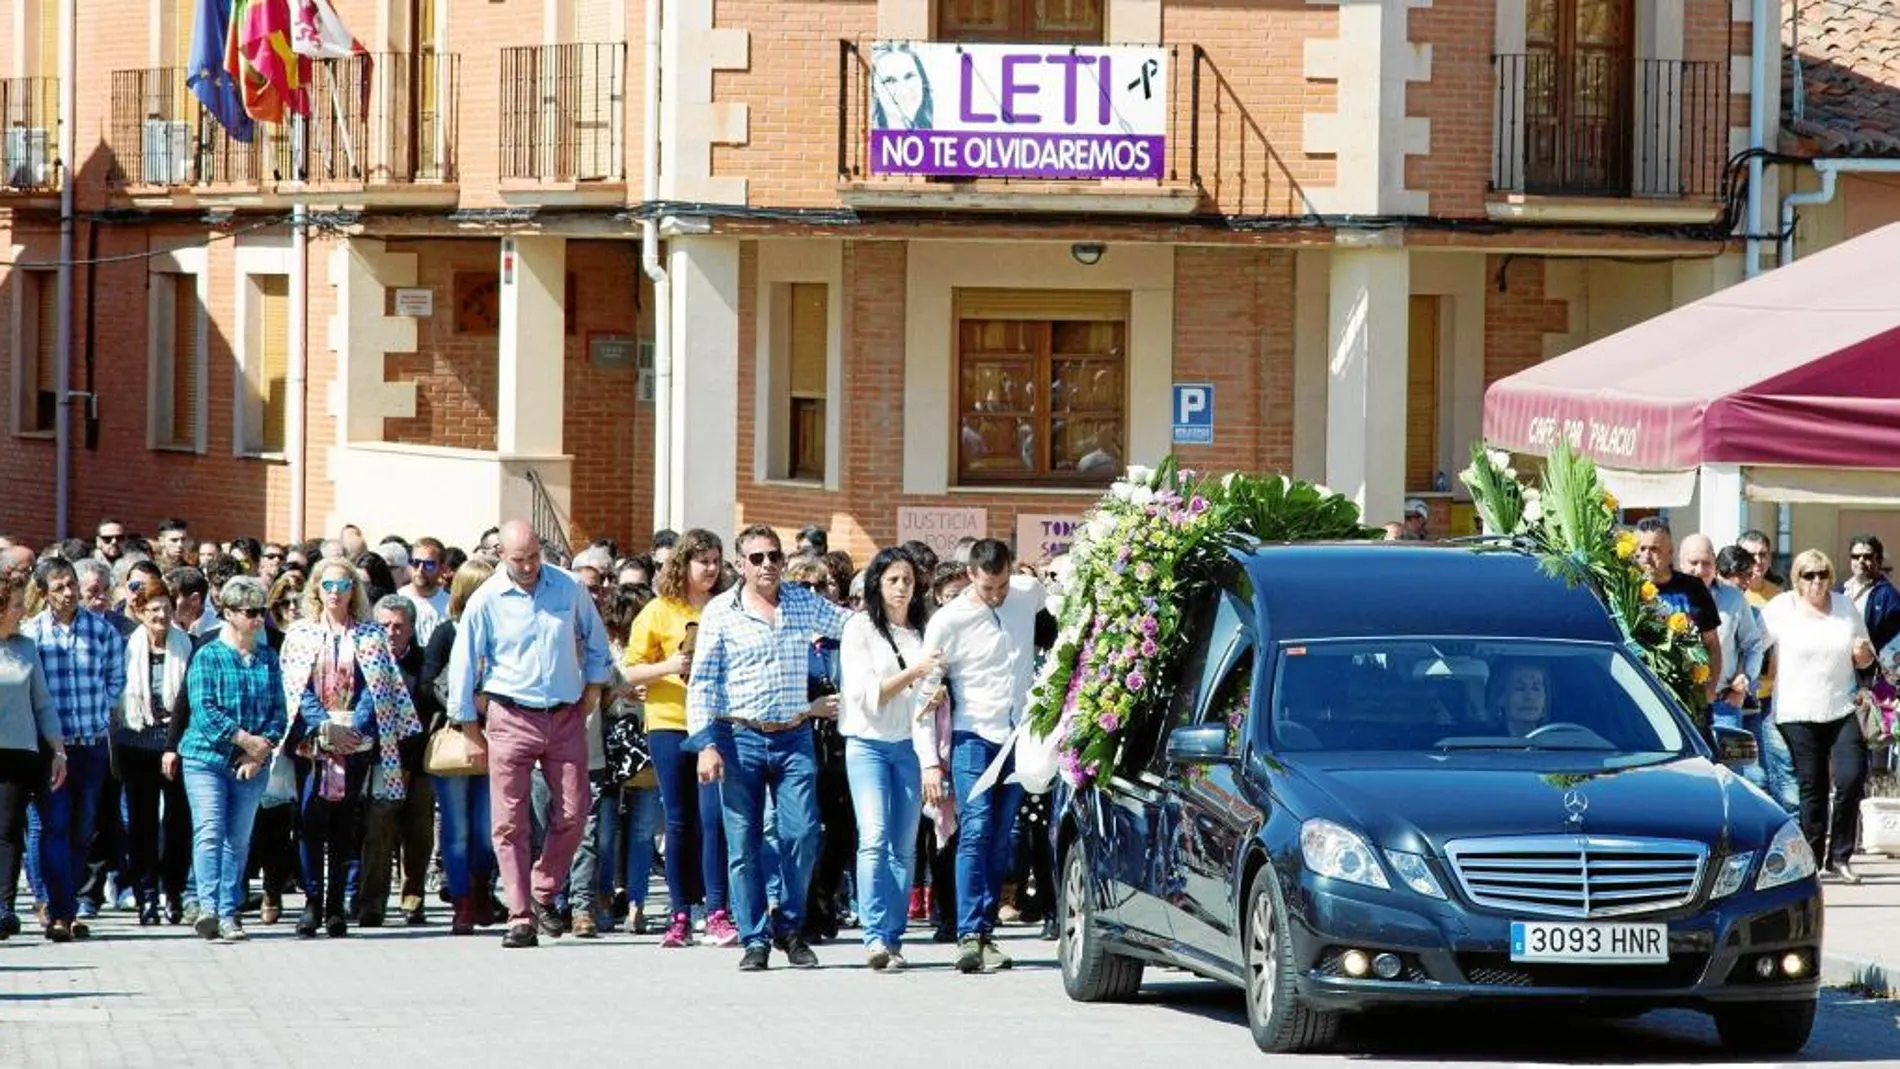 Cerca de 2.000 personas (familiares, amigos y vecinos del pueblo) quisieron despedir ayer a «Lety» en Tábara, el pueblo donde nació hace sólo 32 años / Efe